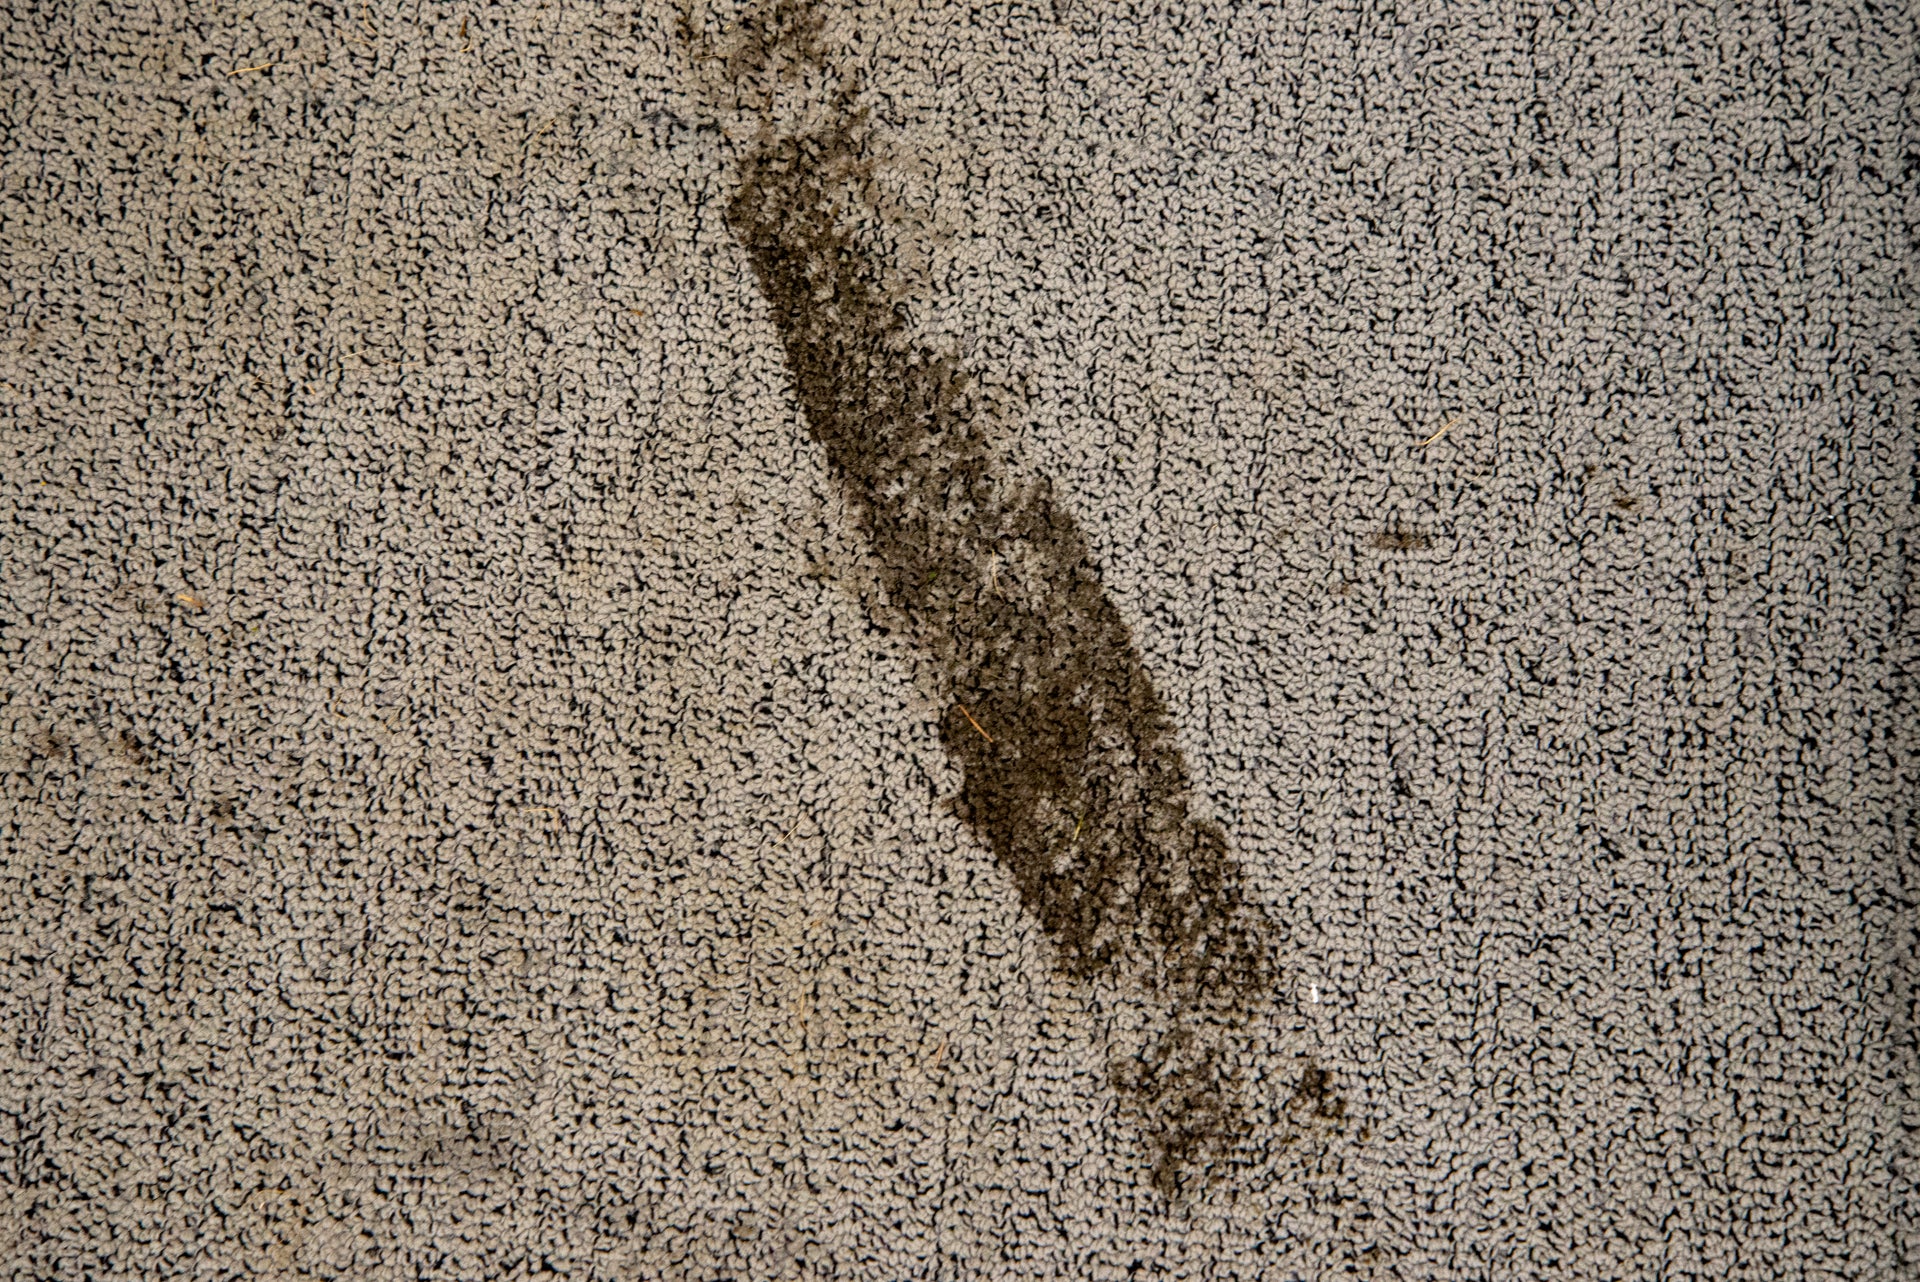 Vax Platinum SmartWash Carpet Cleaner mud on carpet